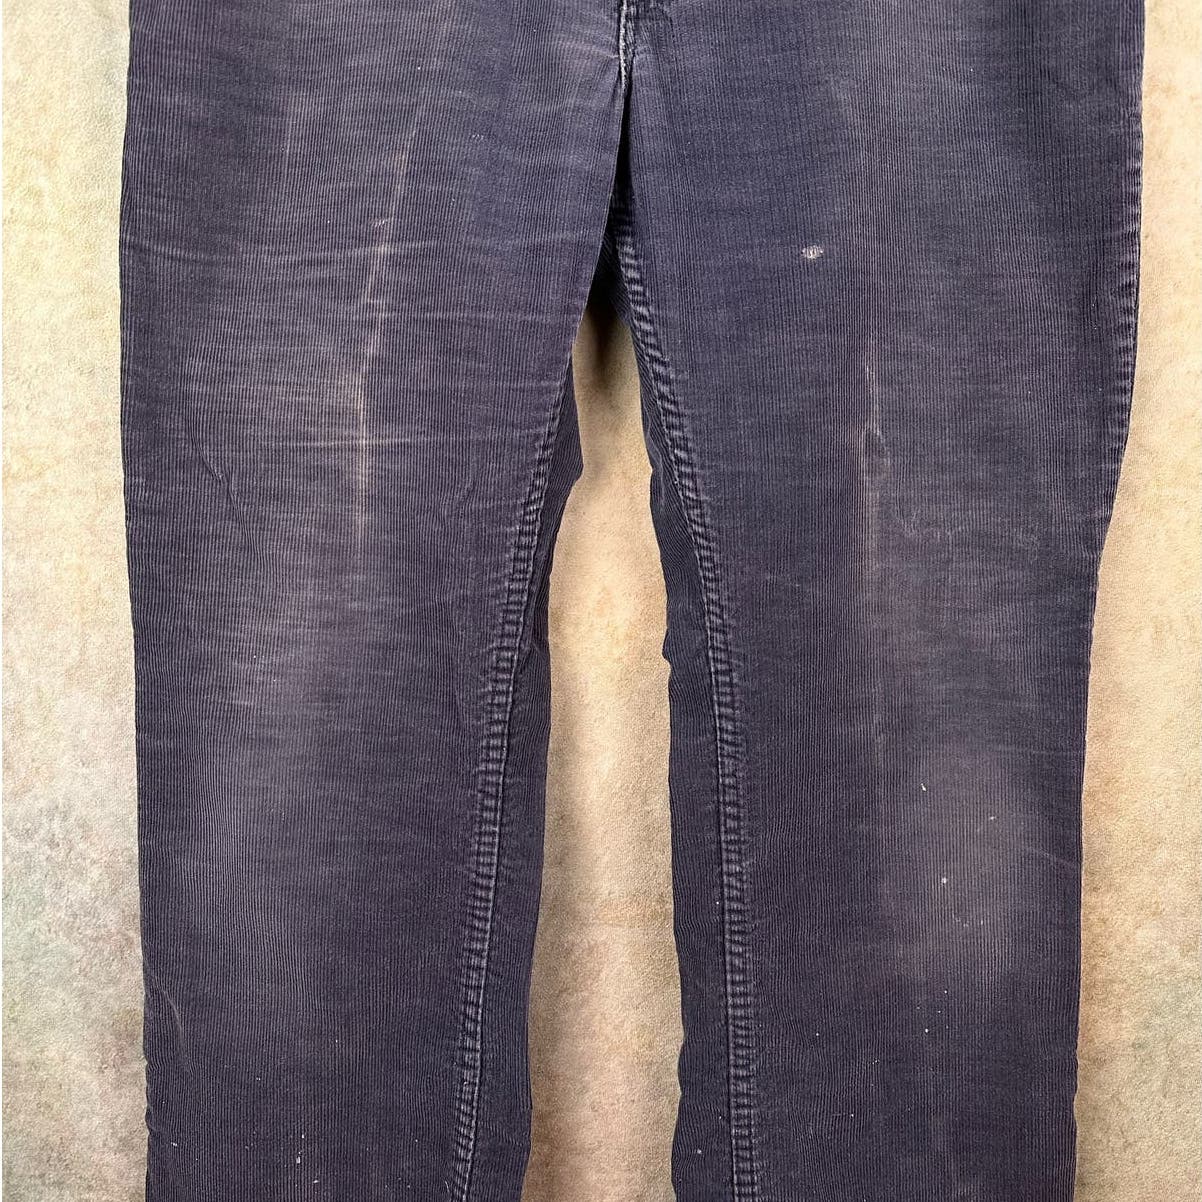 Vintage Levis Corduroy Pants 34x31